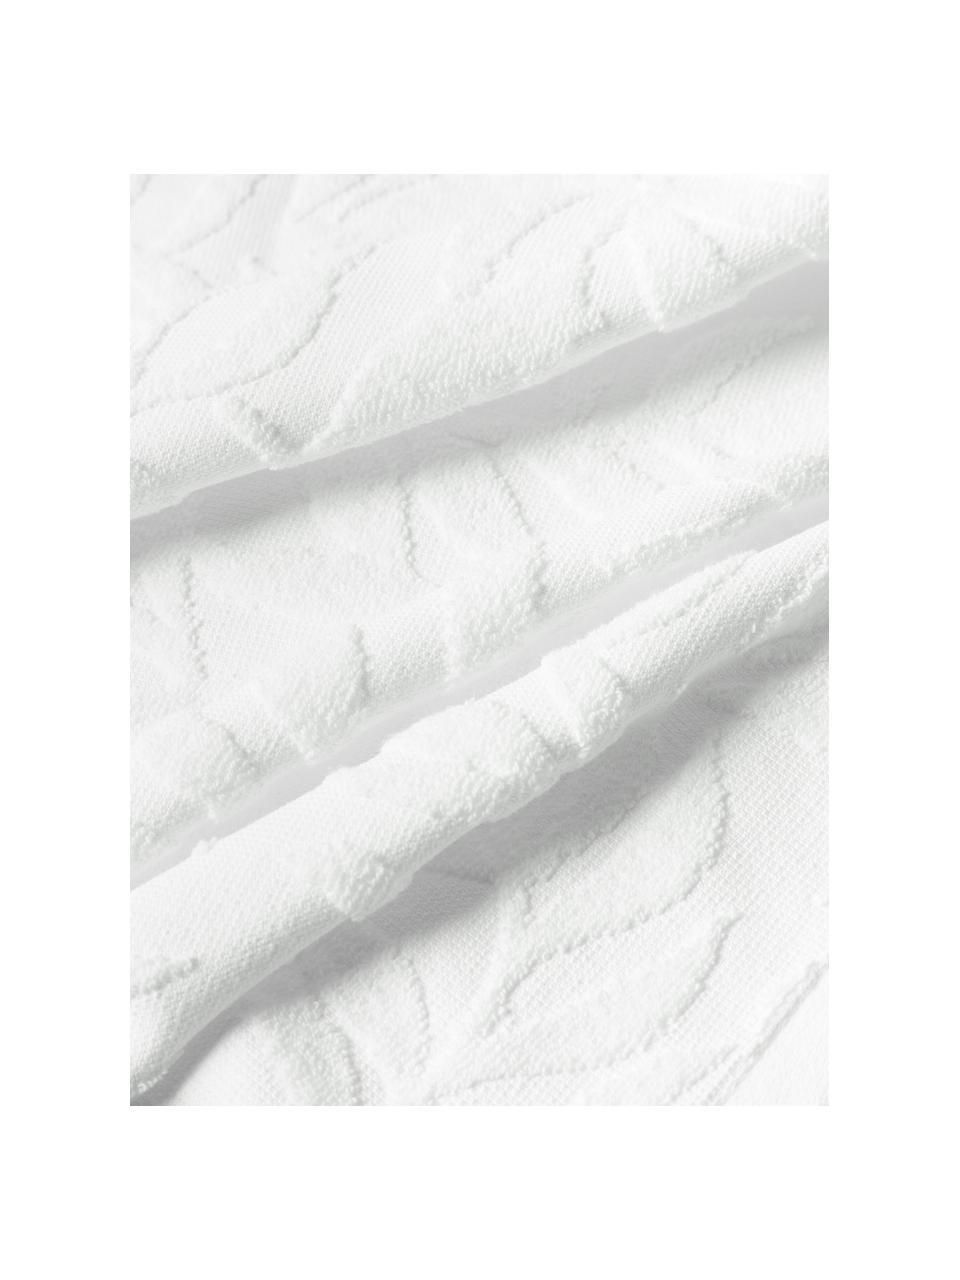 Lot de serviettes de bain en coton Leaf, set de tailles variées, Blanc, 3 éléments (1 serviette invité, 1 serviette de toilette et 1 drap de bain)